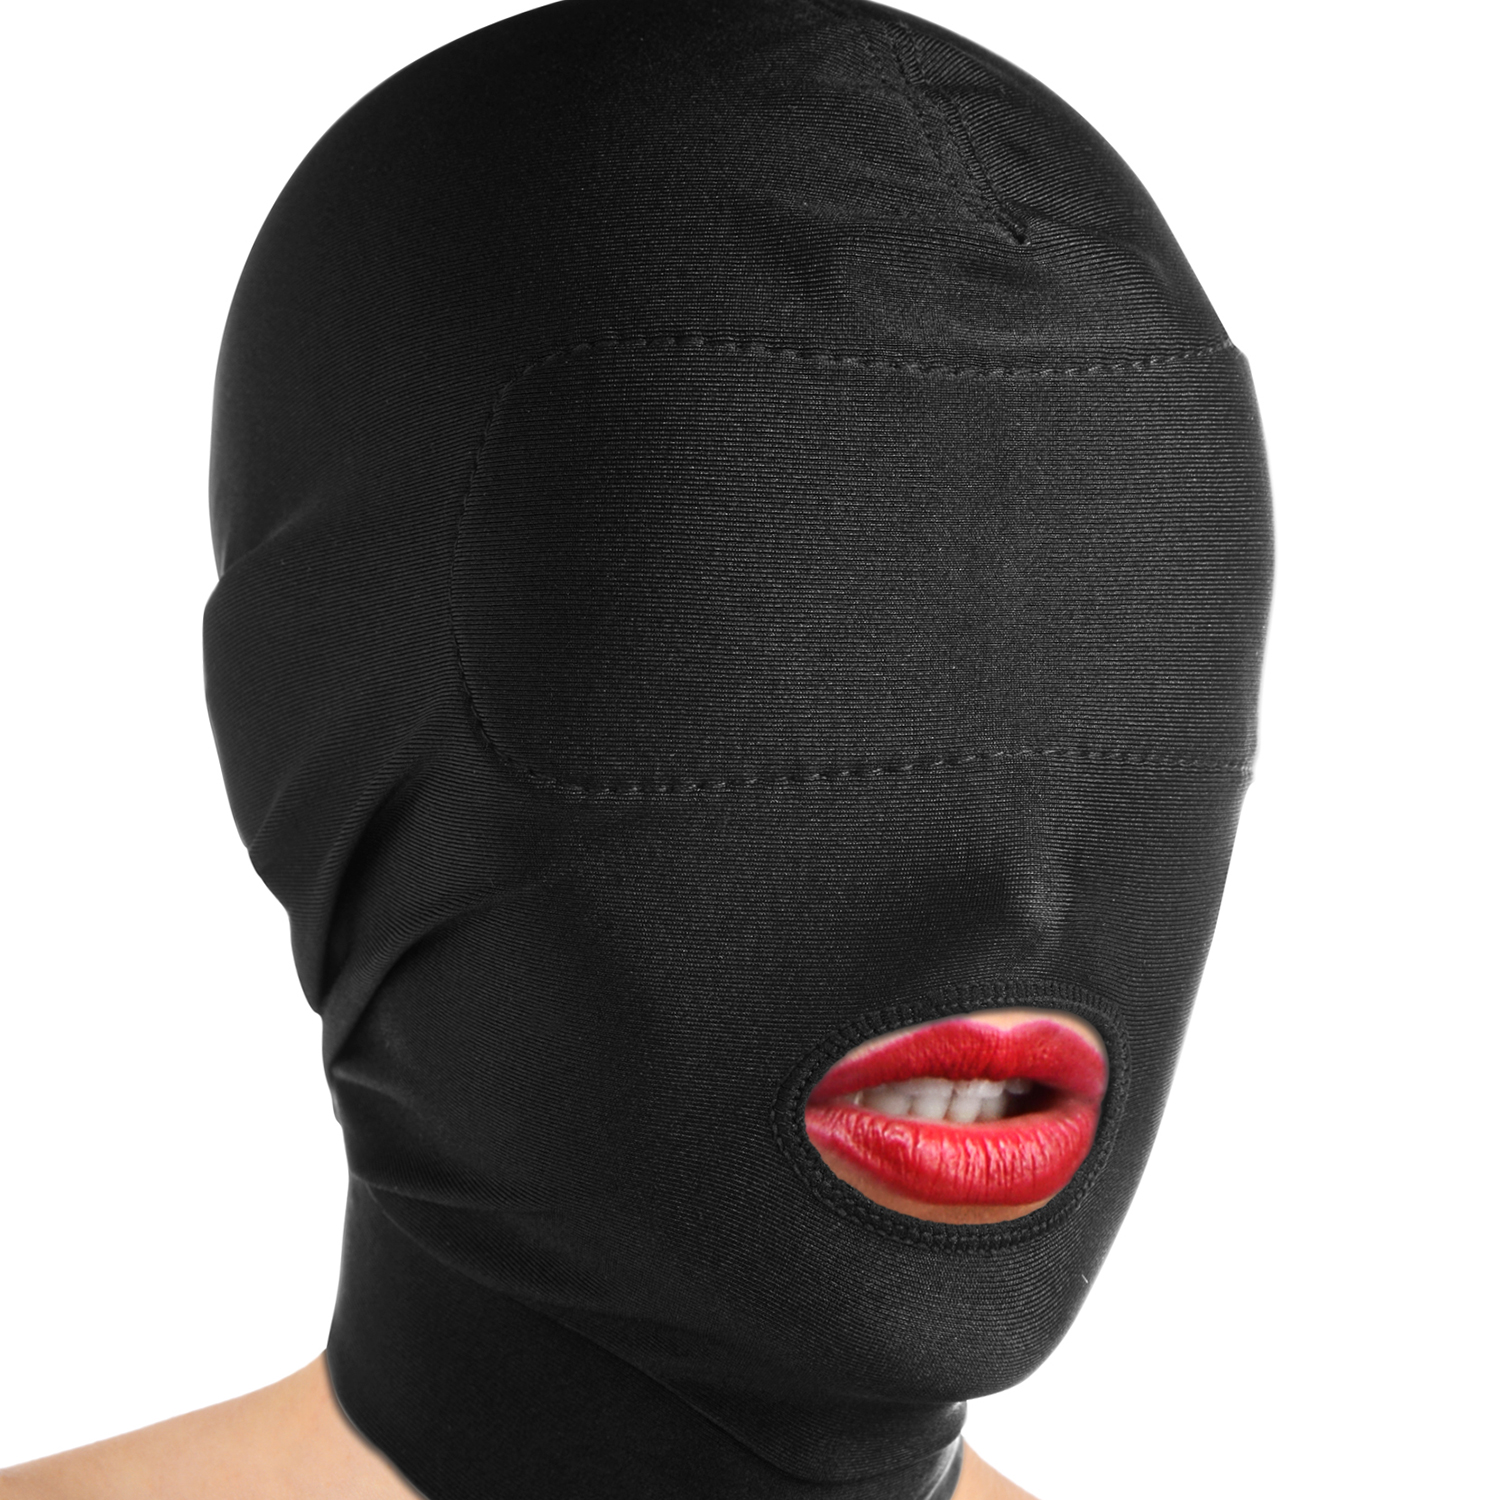 Master Series Disguise Masque avec une ouverture pour la bouche et un bandeau - Noir - One Size